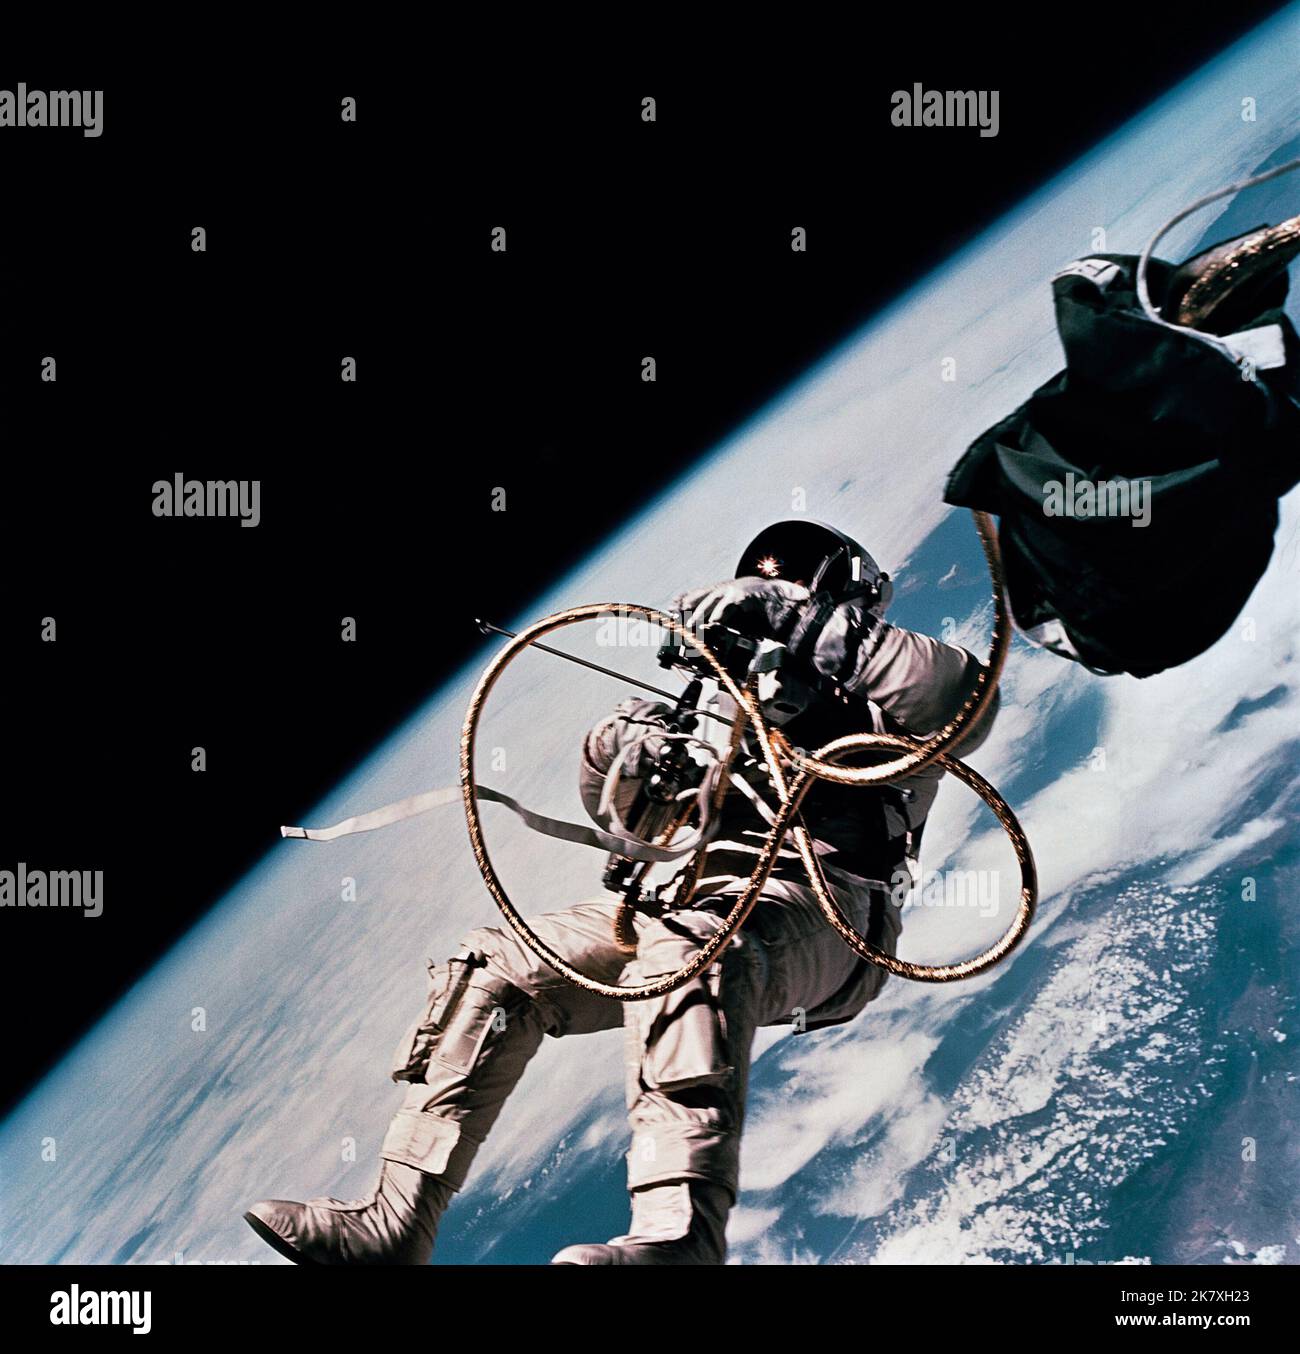 L'astronauta ed White ha eseguito il primo spaziale americano durante la missione Gemini 4 il 3 giugno 1965. L'astronauta ed White, pilota del semaforo spaziale Gemini-Titan 4 (GT-4), galleggia nella gravità zero dello spazio durante la terza rivoluzione della navicella spaziale GT-4. Foto Stock